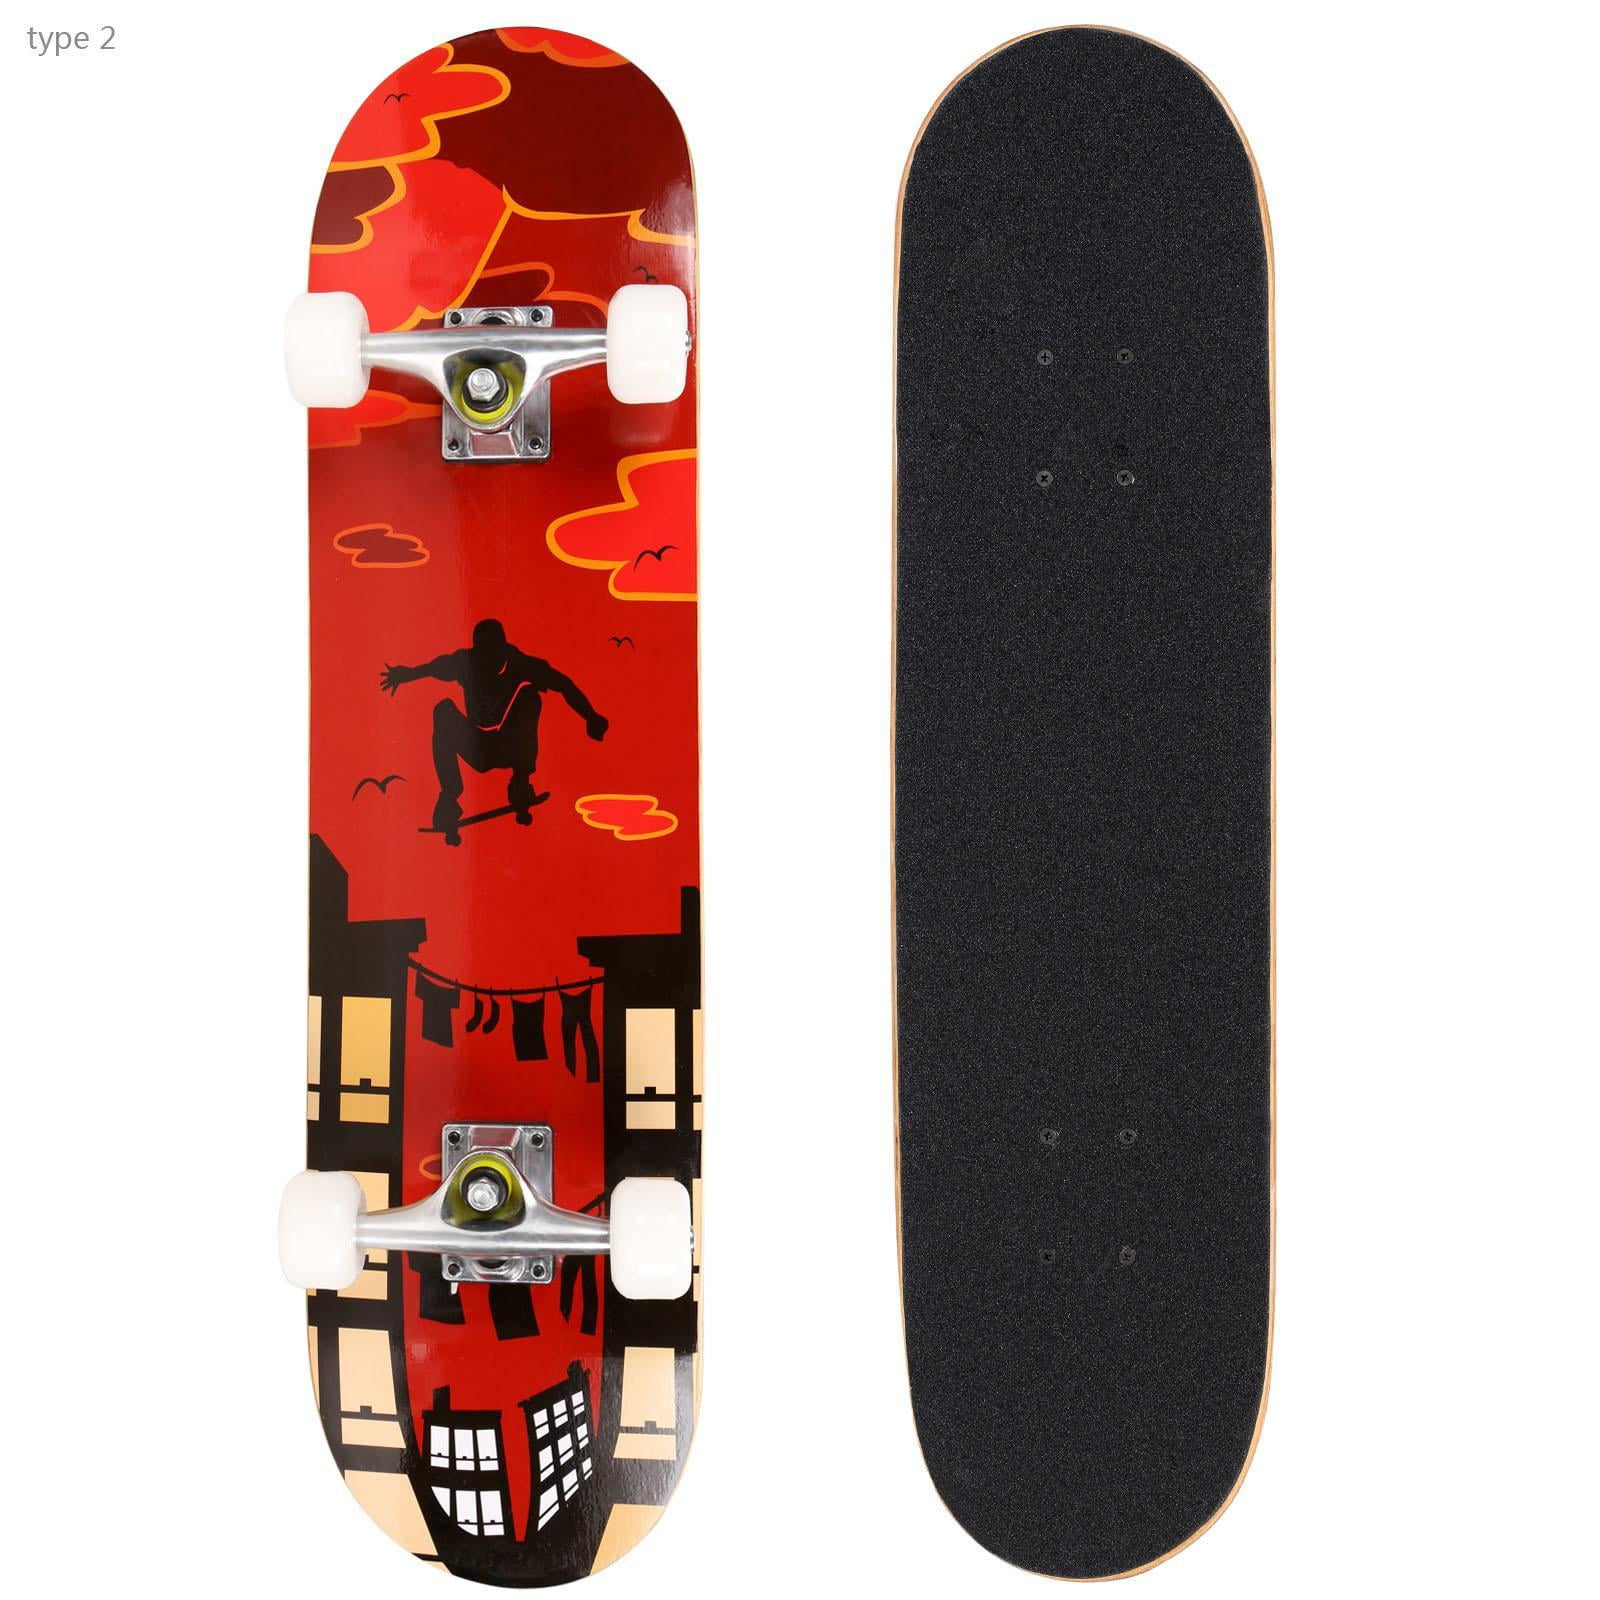 Elecmall 31&quot; PU wheels Longboard Complete Deck Skateboard,PRO Print Wood board Elec